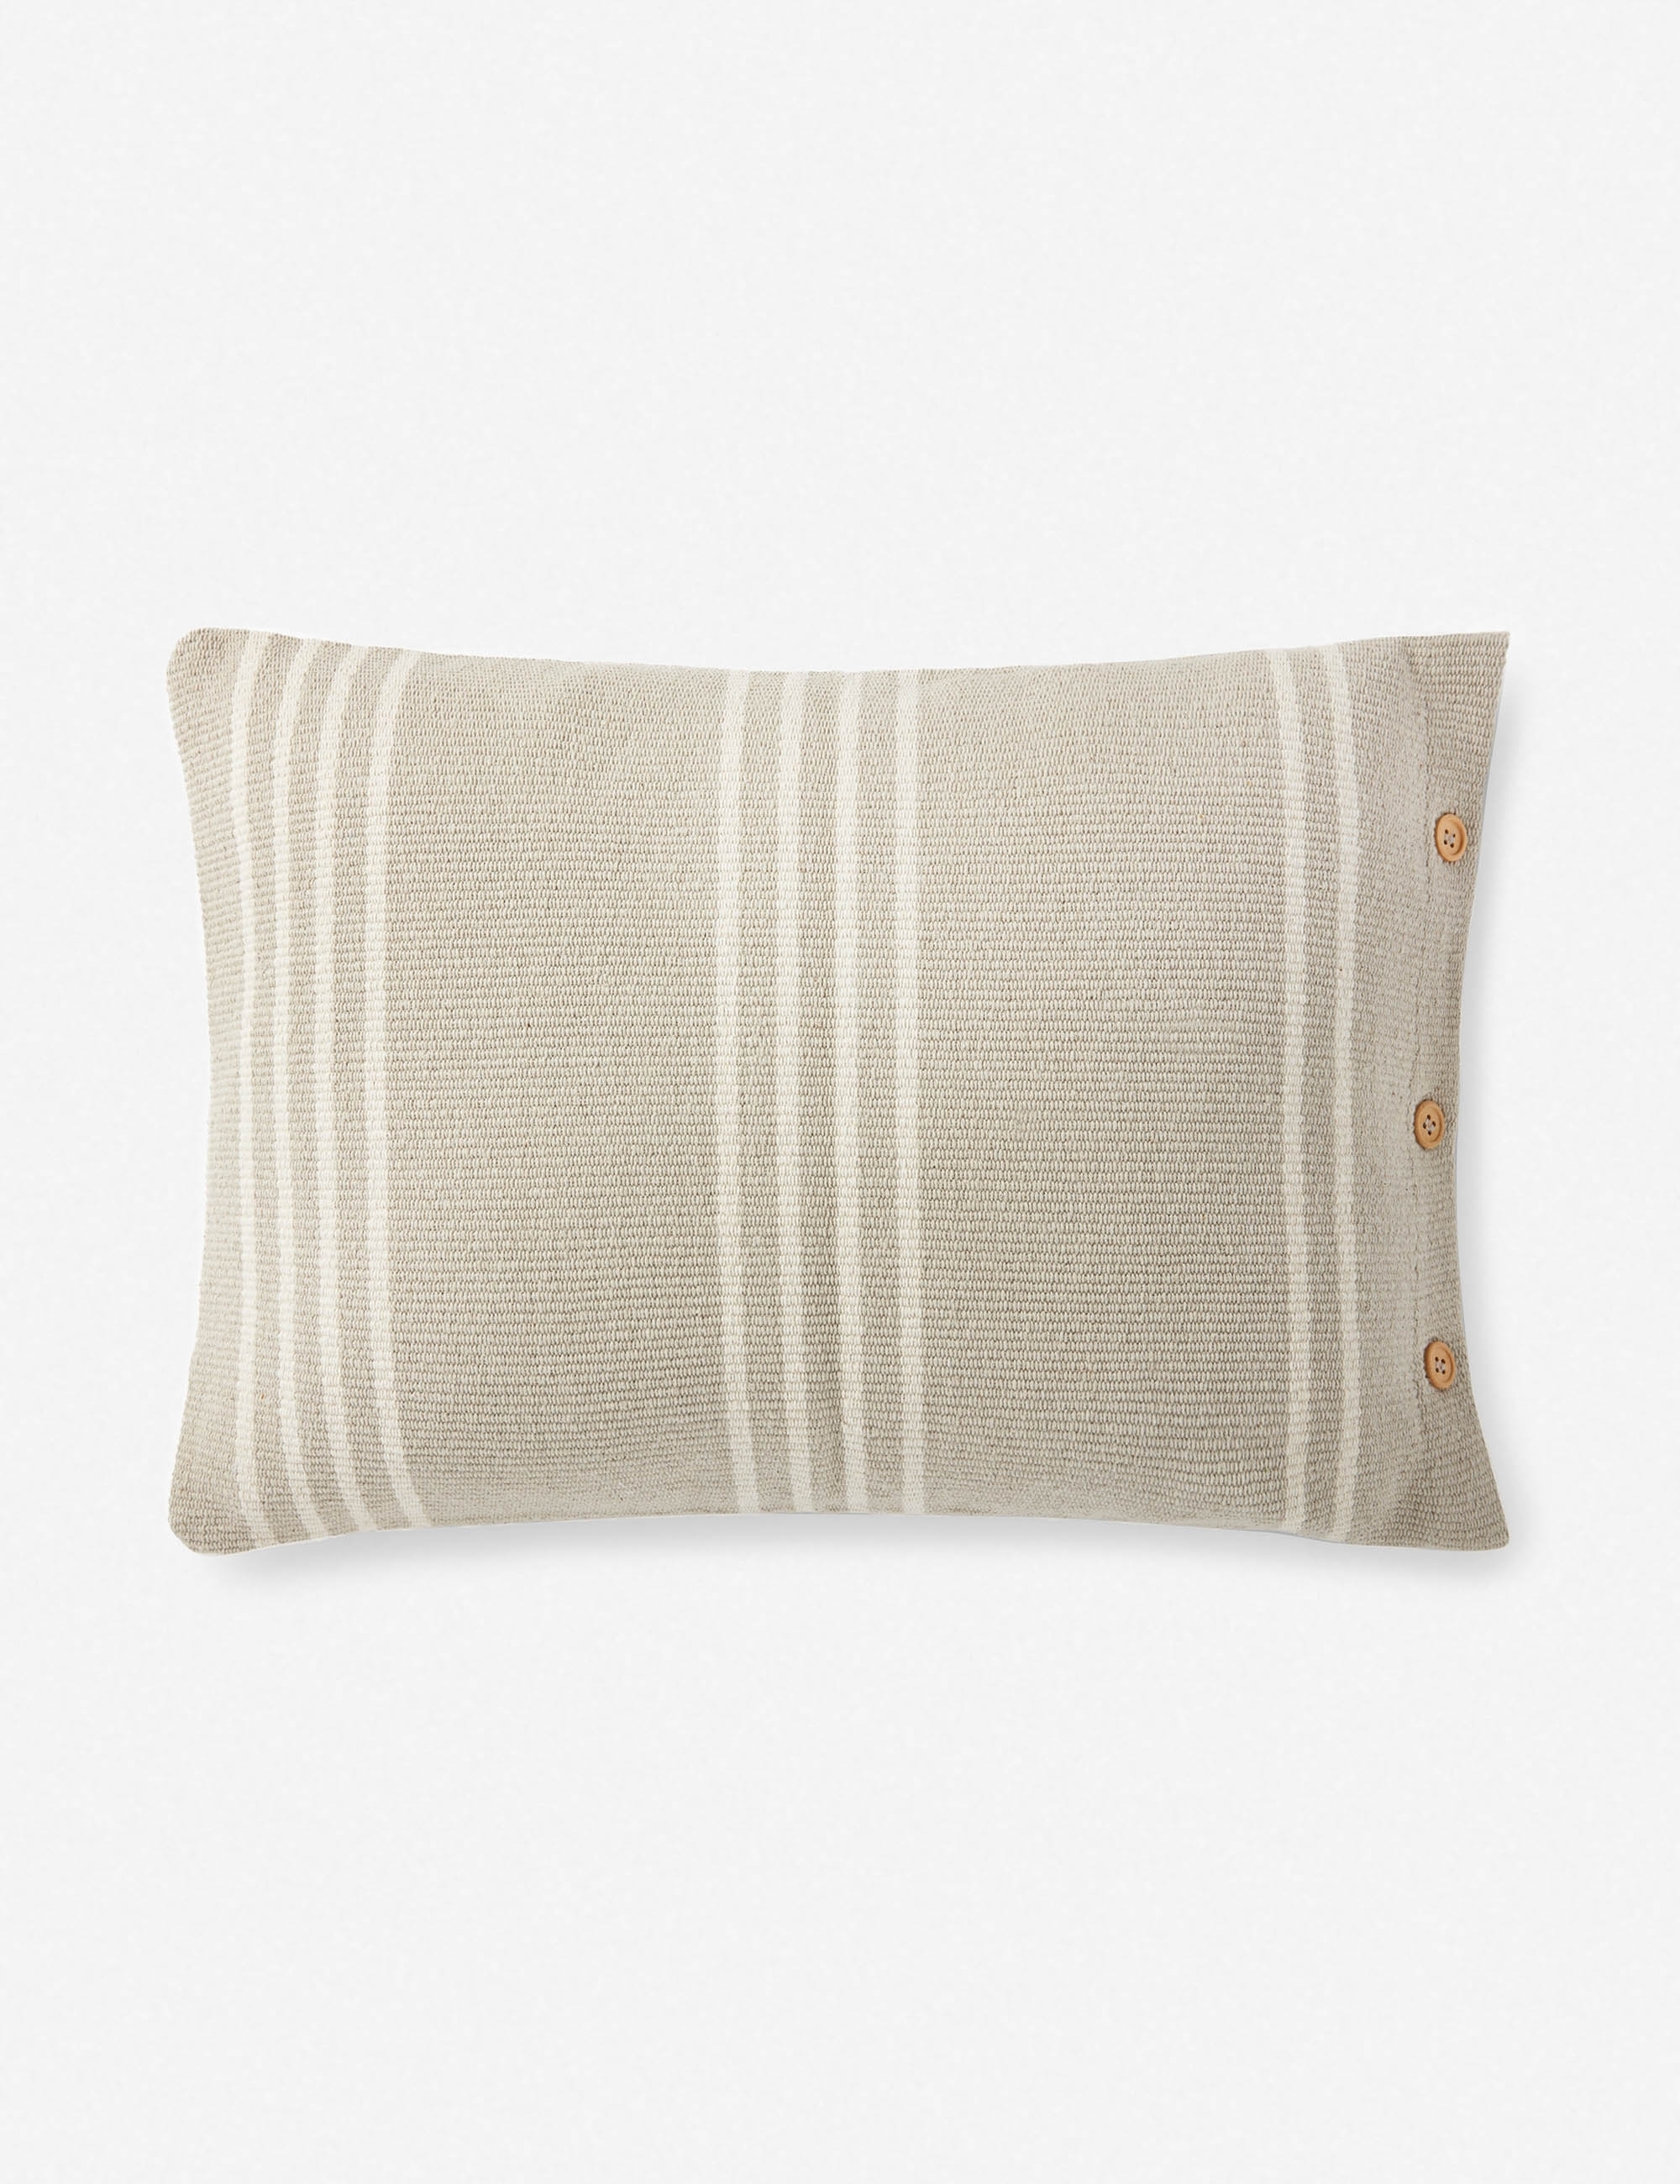 Rani Lumbar Pillow, Gray 16" x 26" - Image 0